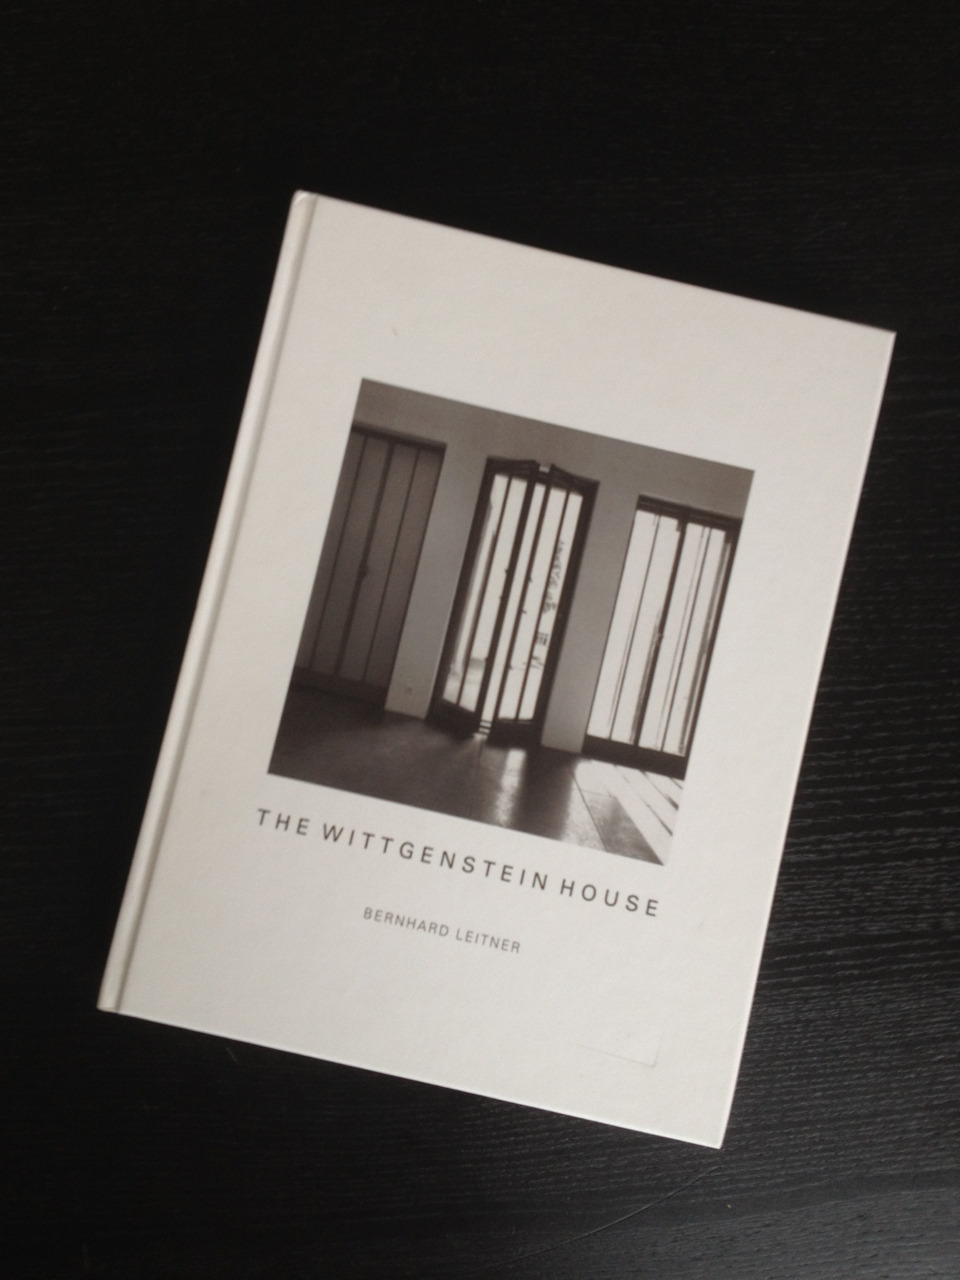 The Wittgenstein House by Bernhard Leitner